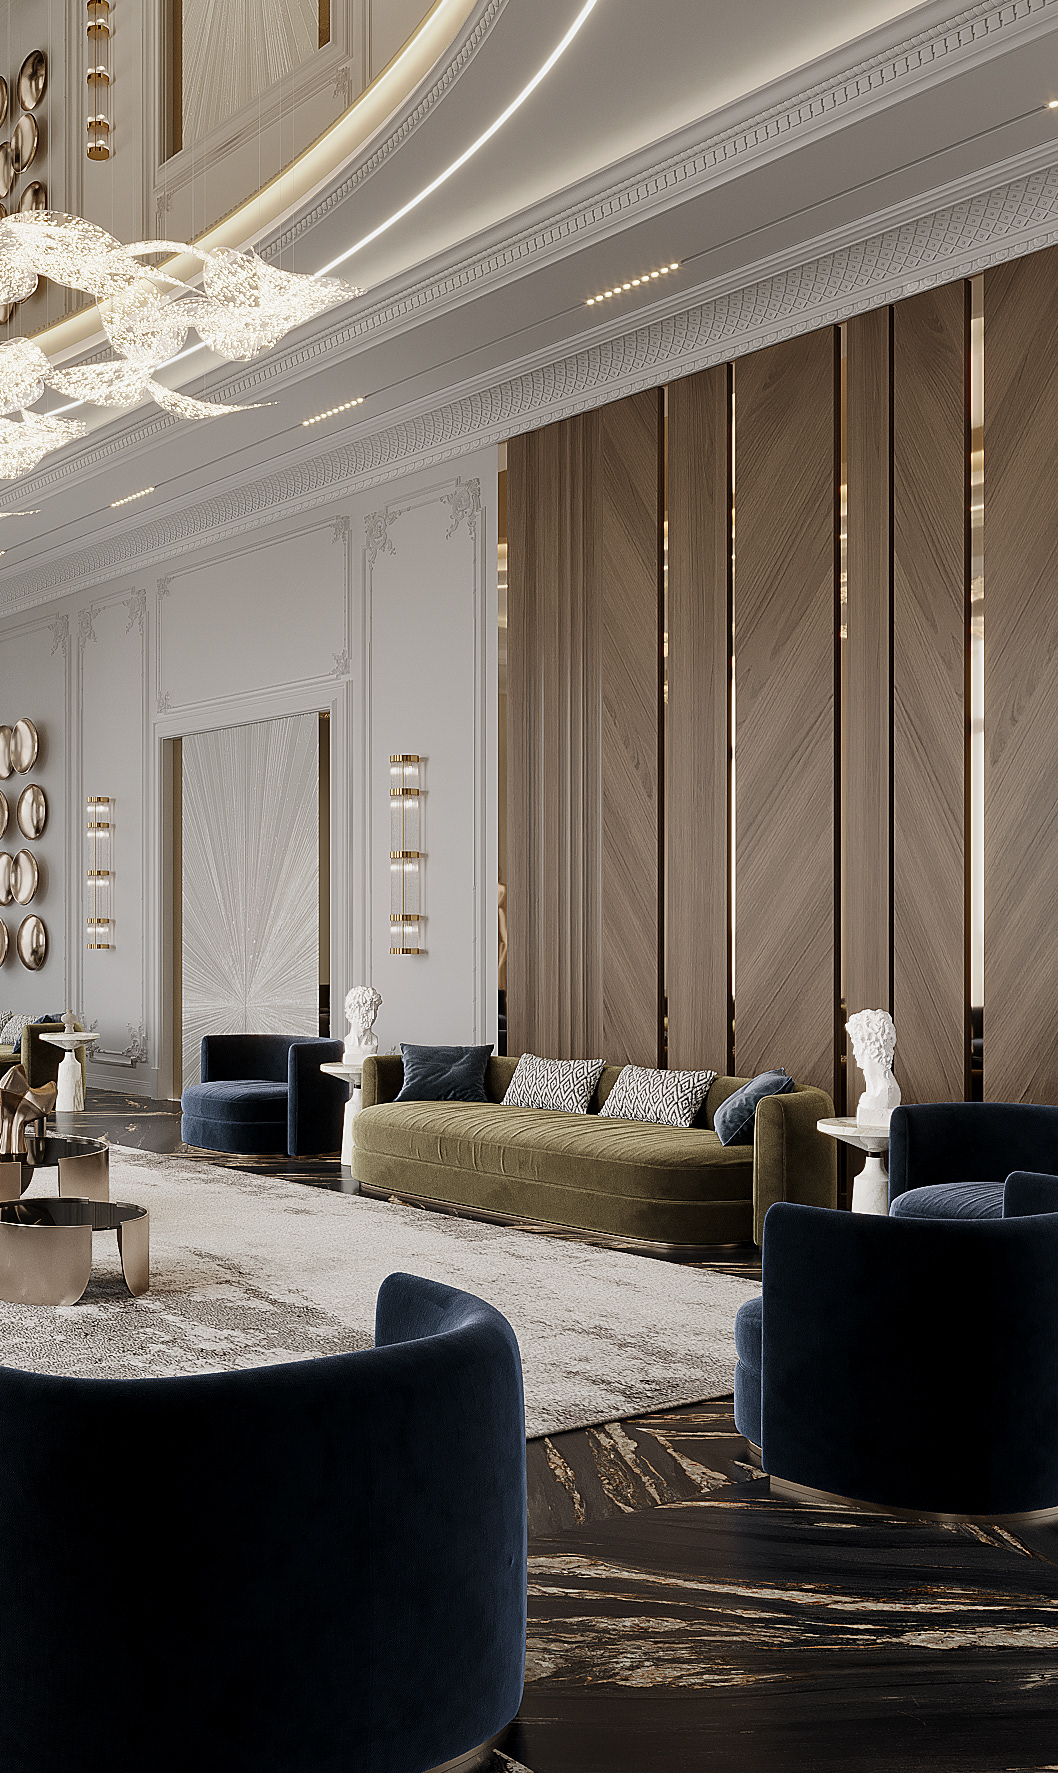 Luxury Design Interior architecture נחמי חשין تنمية بشرية  interior design  corona visualization home design